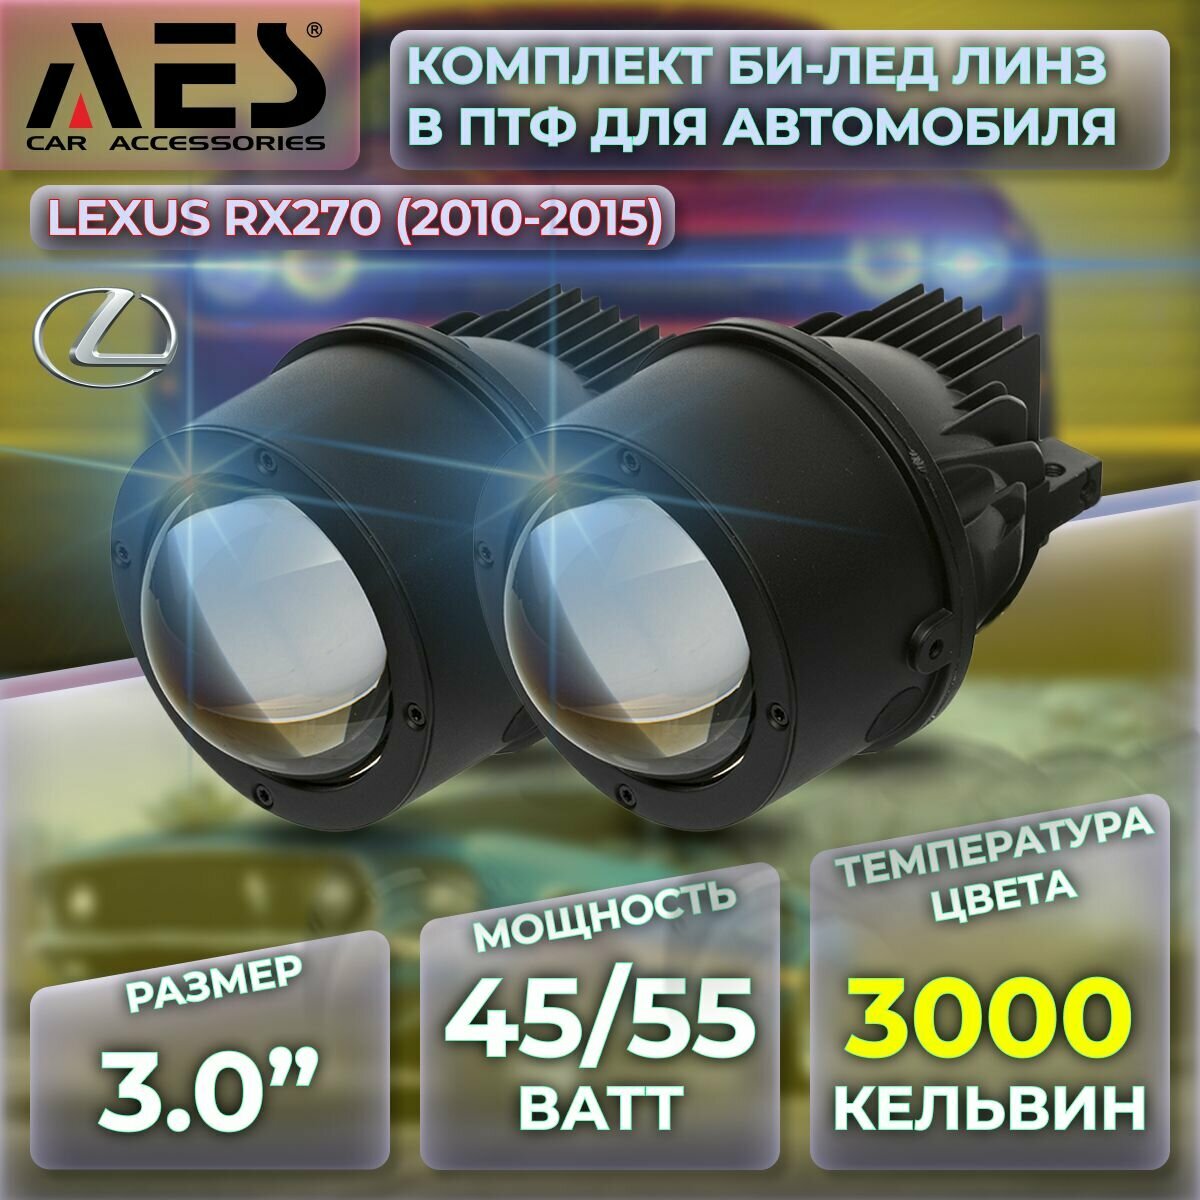 Комплект Би-лед линз в ПТФ для Lexus RX270 (2010-2015) Q8 Foglight Bi-LED Laser 3000K (2 модуля 2 кронштейна)